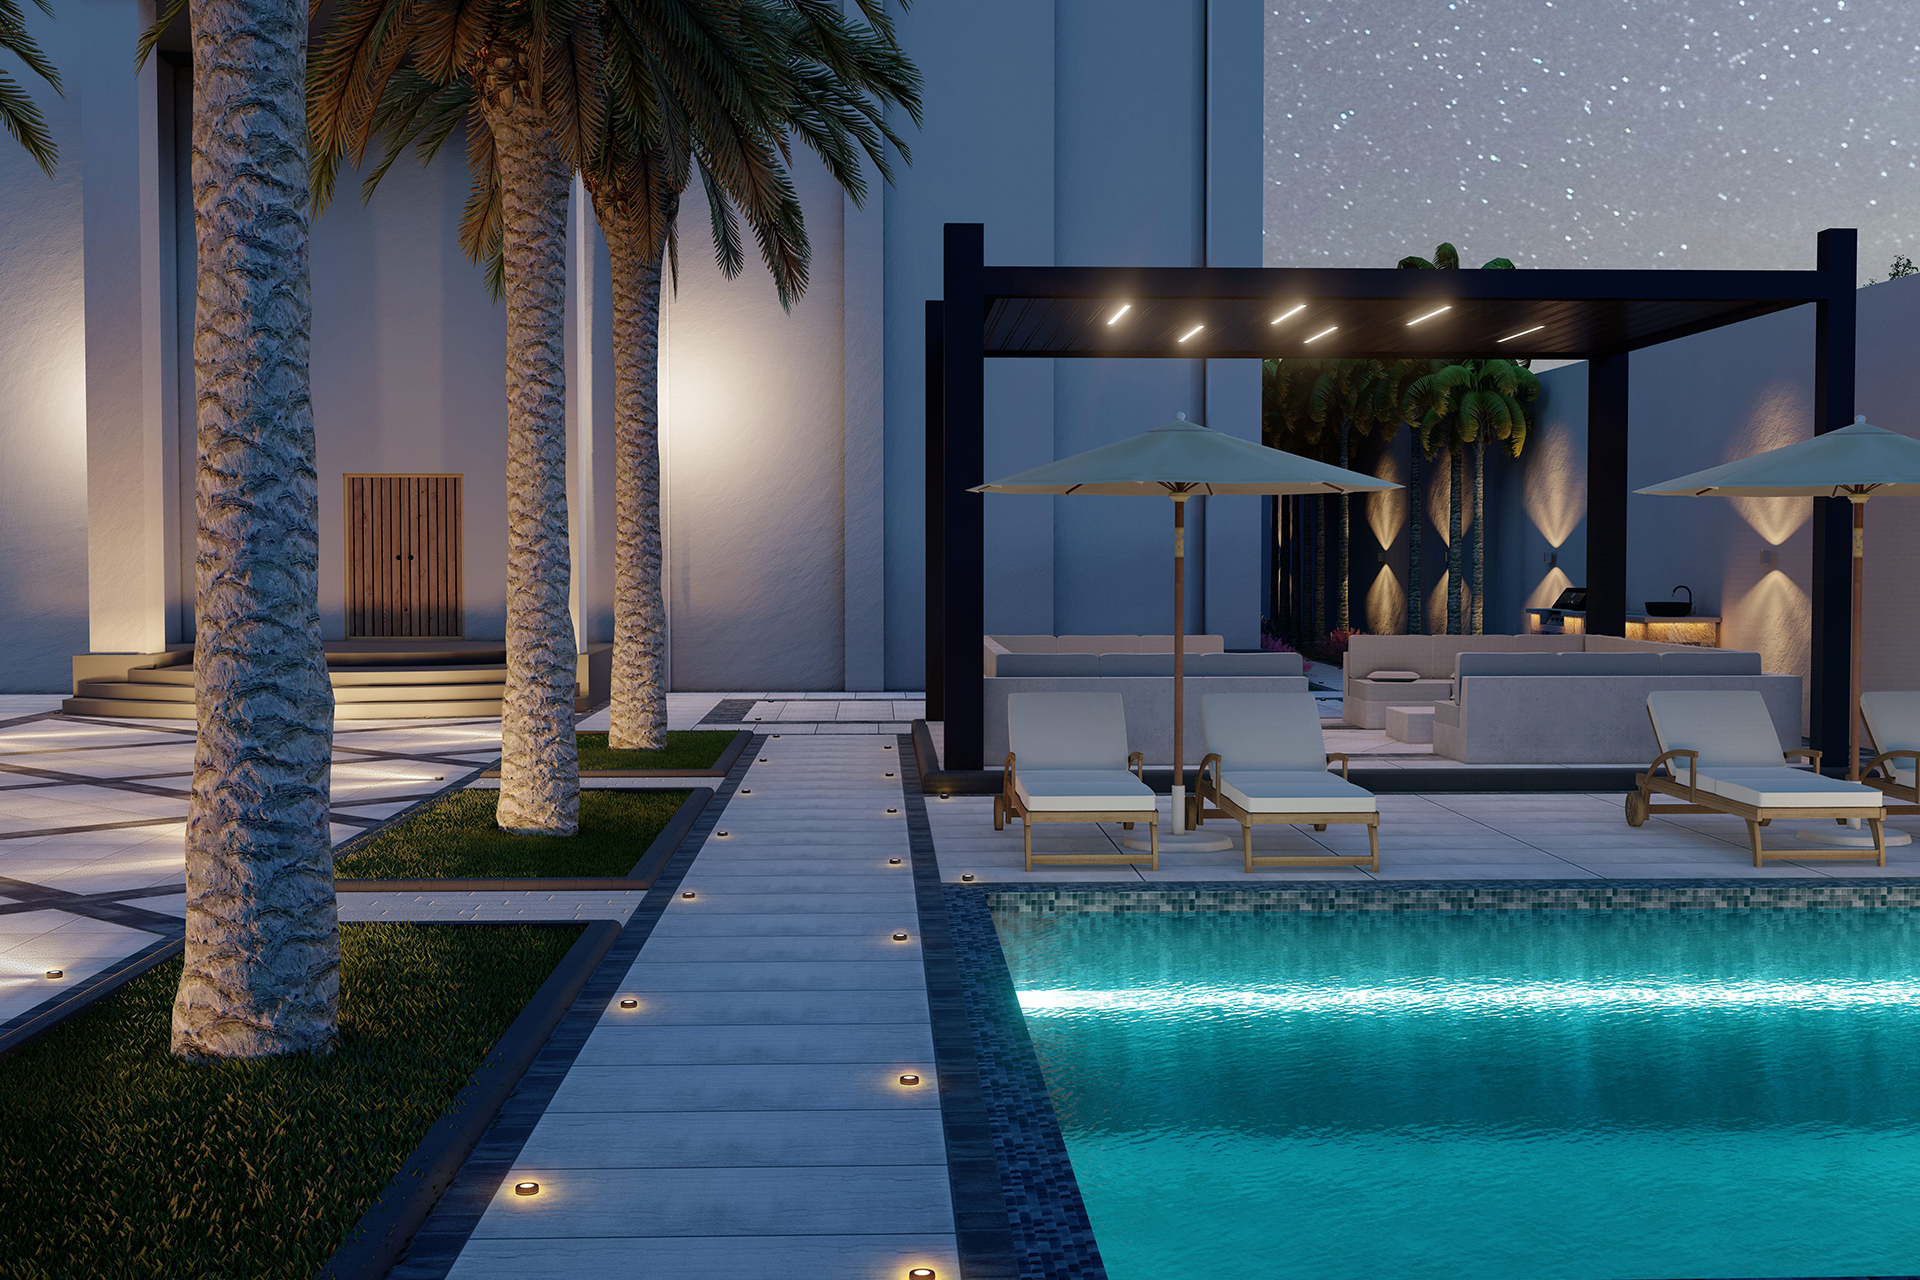 Garden and Pool Design in Dubai